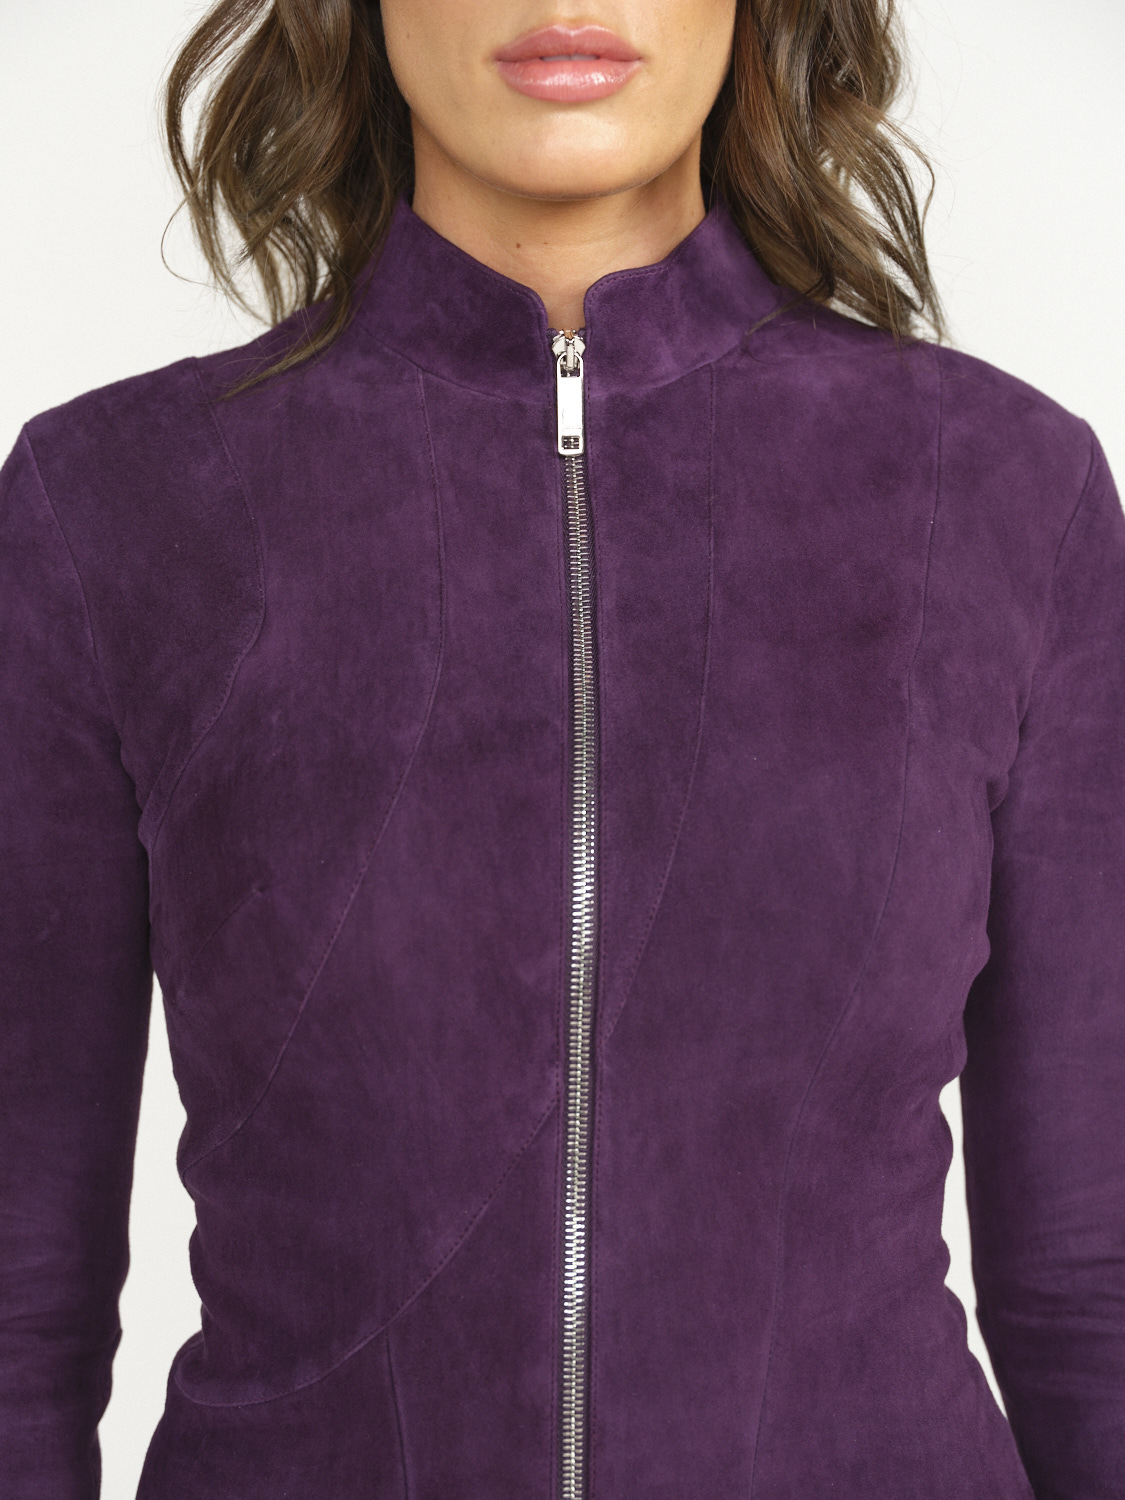 jitrois Ayna - Veste avec coutures cintrées et col montant violet 36